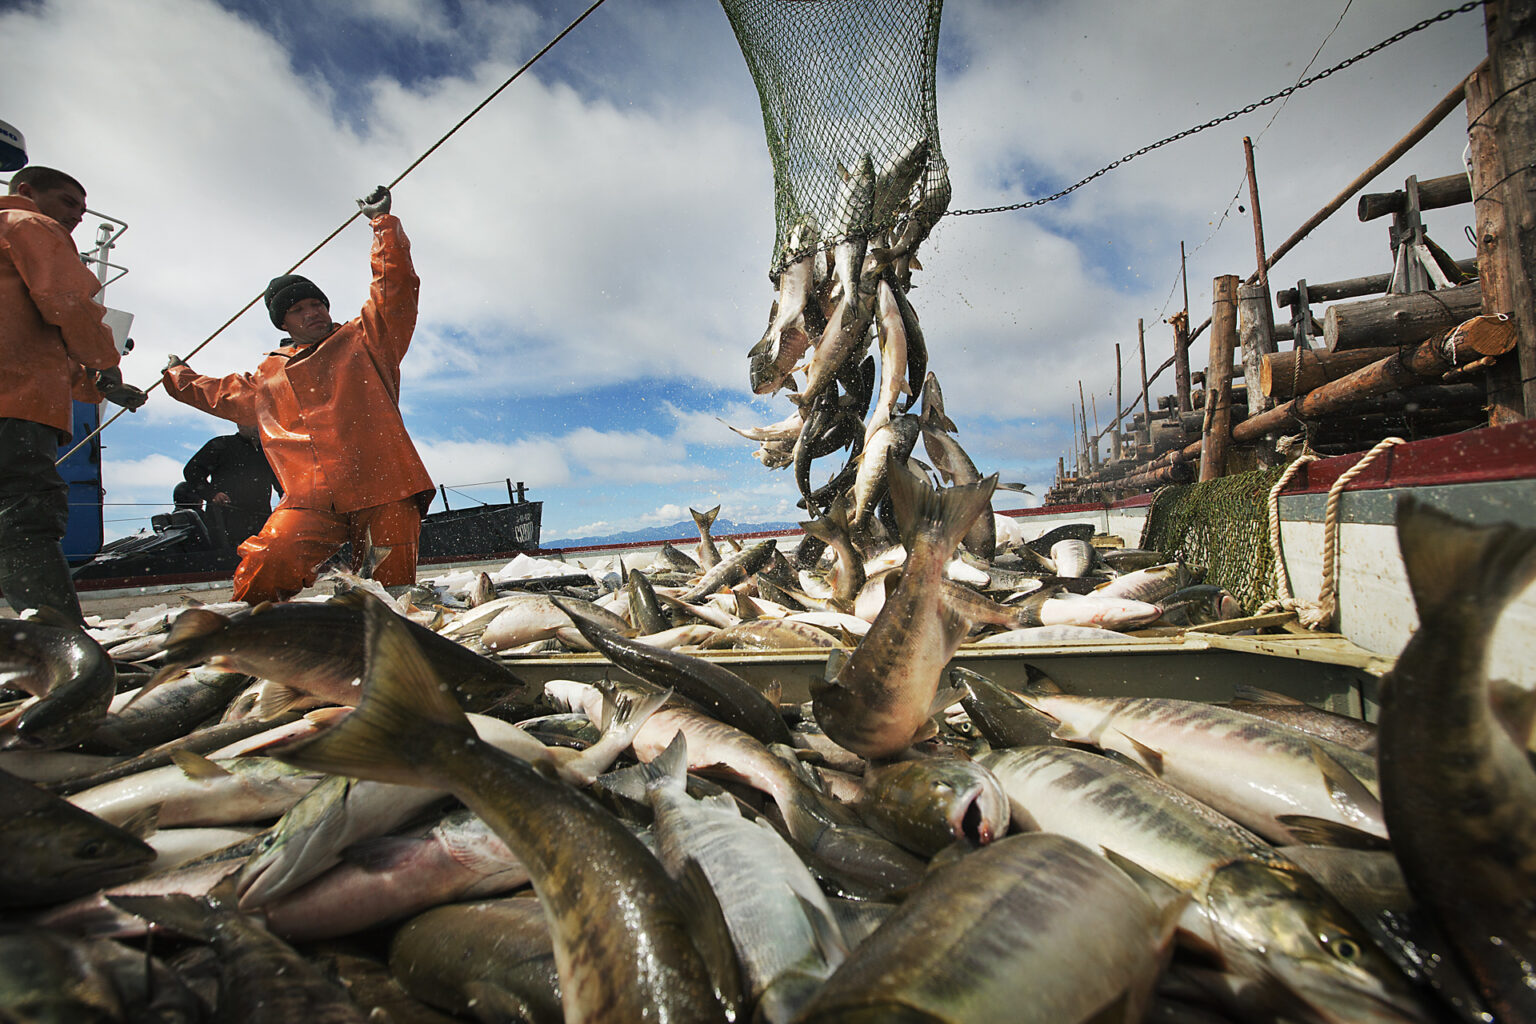  Более чем в 1,5 раза увеличили объемы добычи лососей российские рыбаки